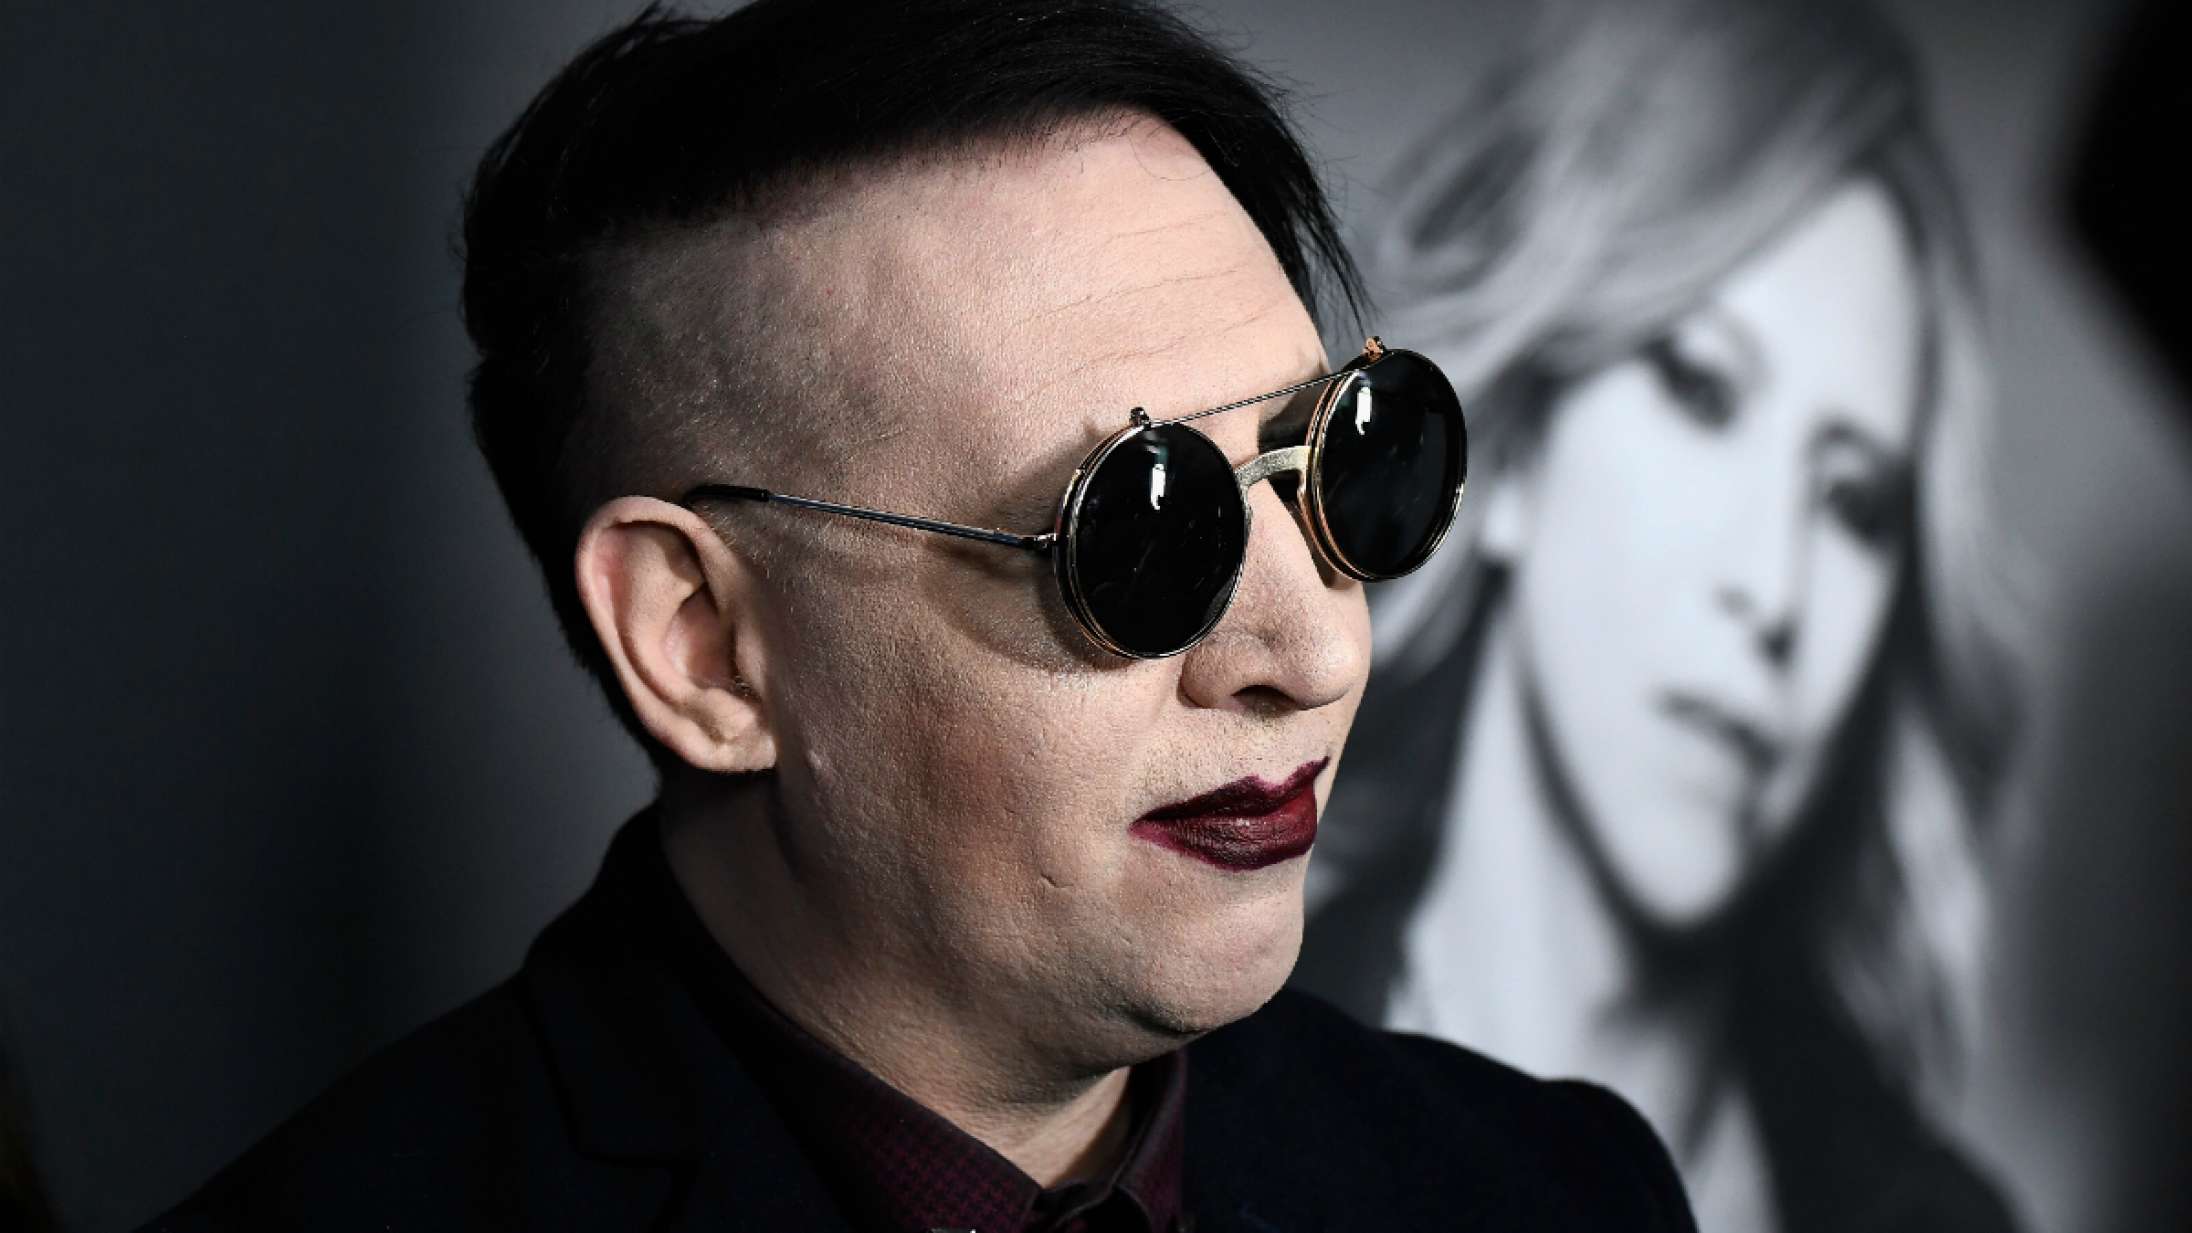 Dommer afviser Marilyn Mansons tidligere assistents søgsmål om seksuelt overgreb, vold og chikane